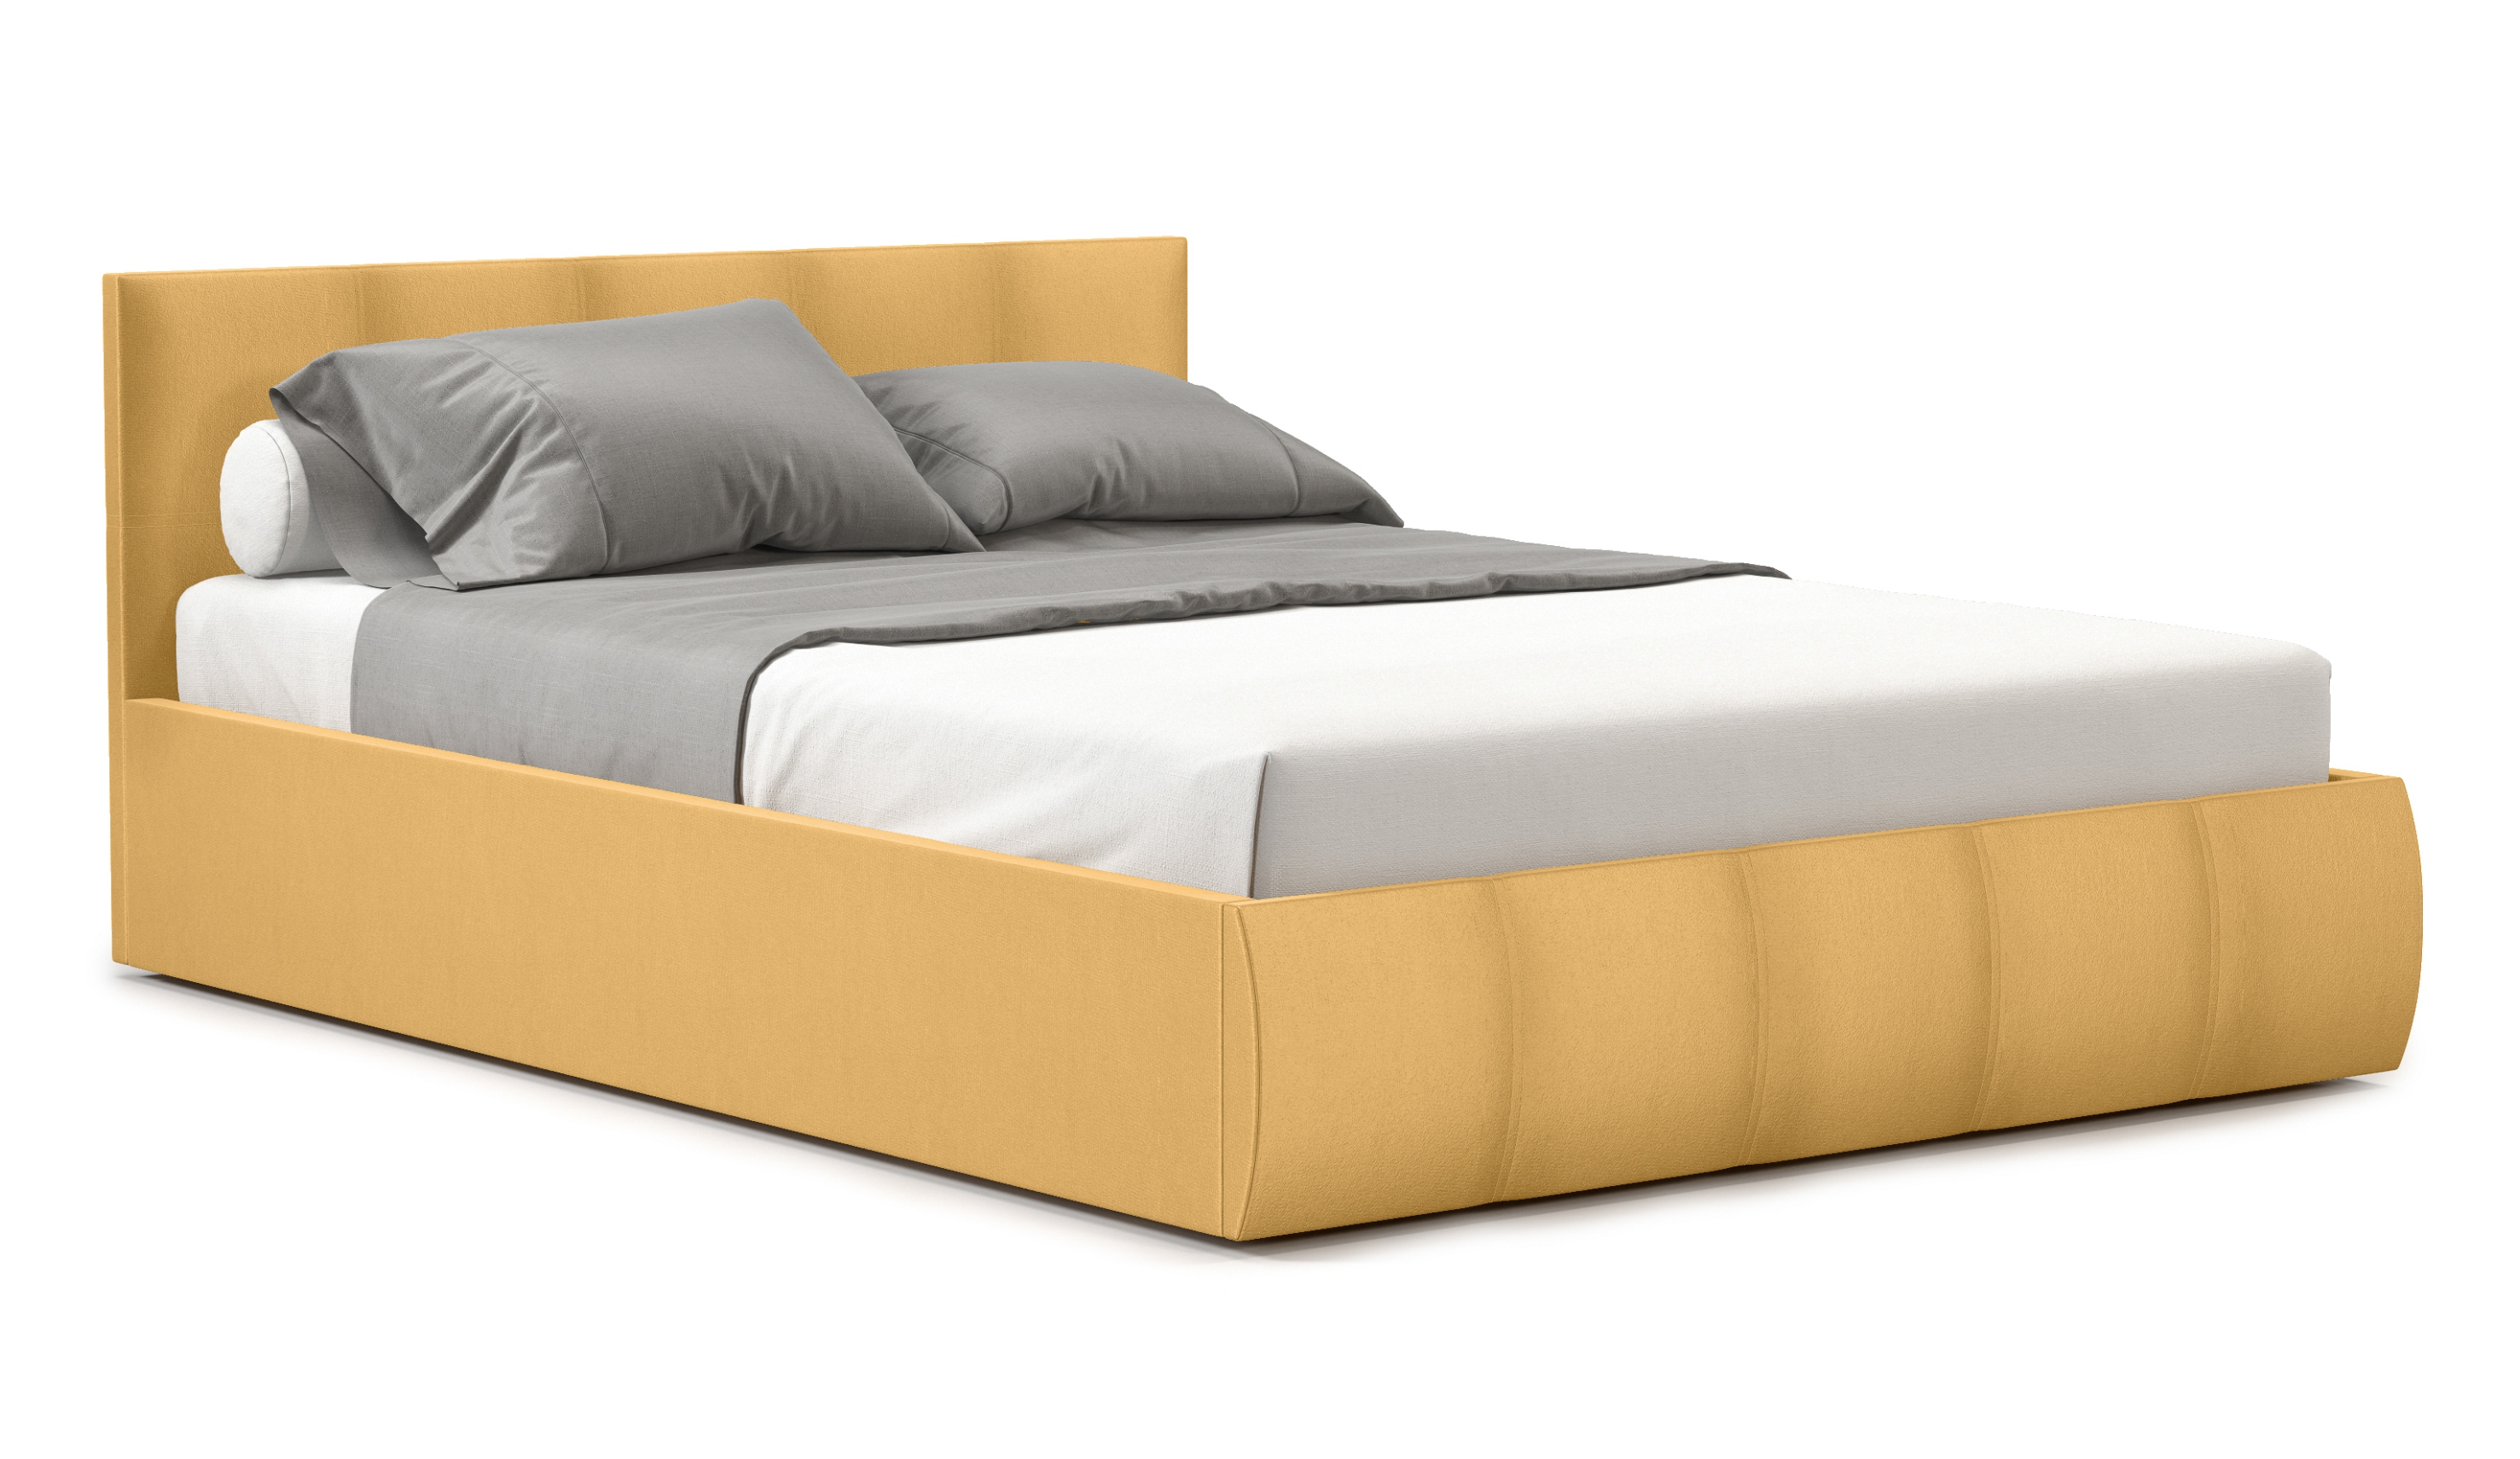 Мягкая кровать Верона 160, цвет bingo mustard (подъемник) - фото 4